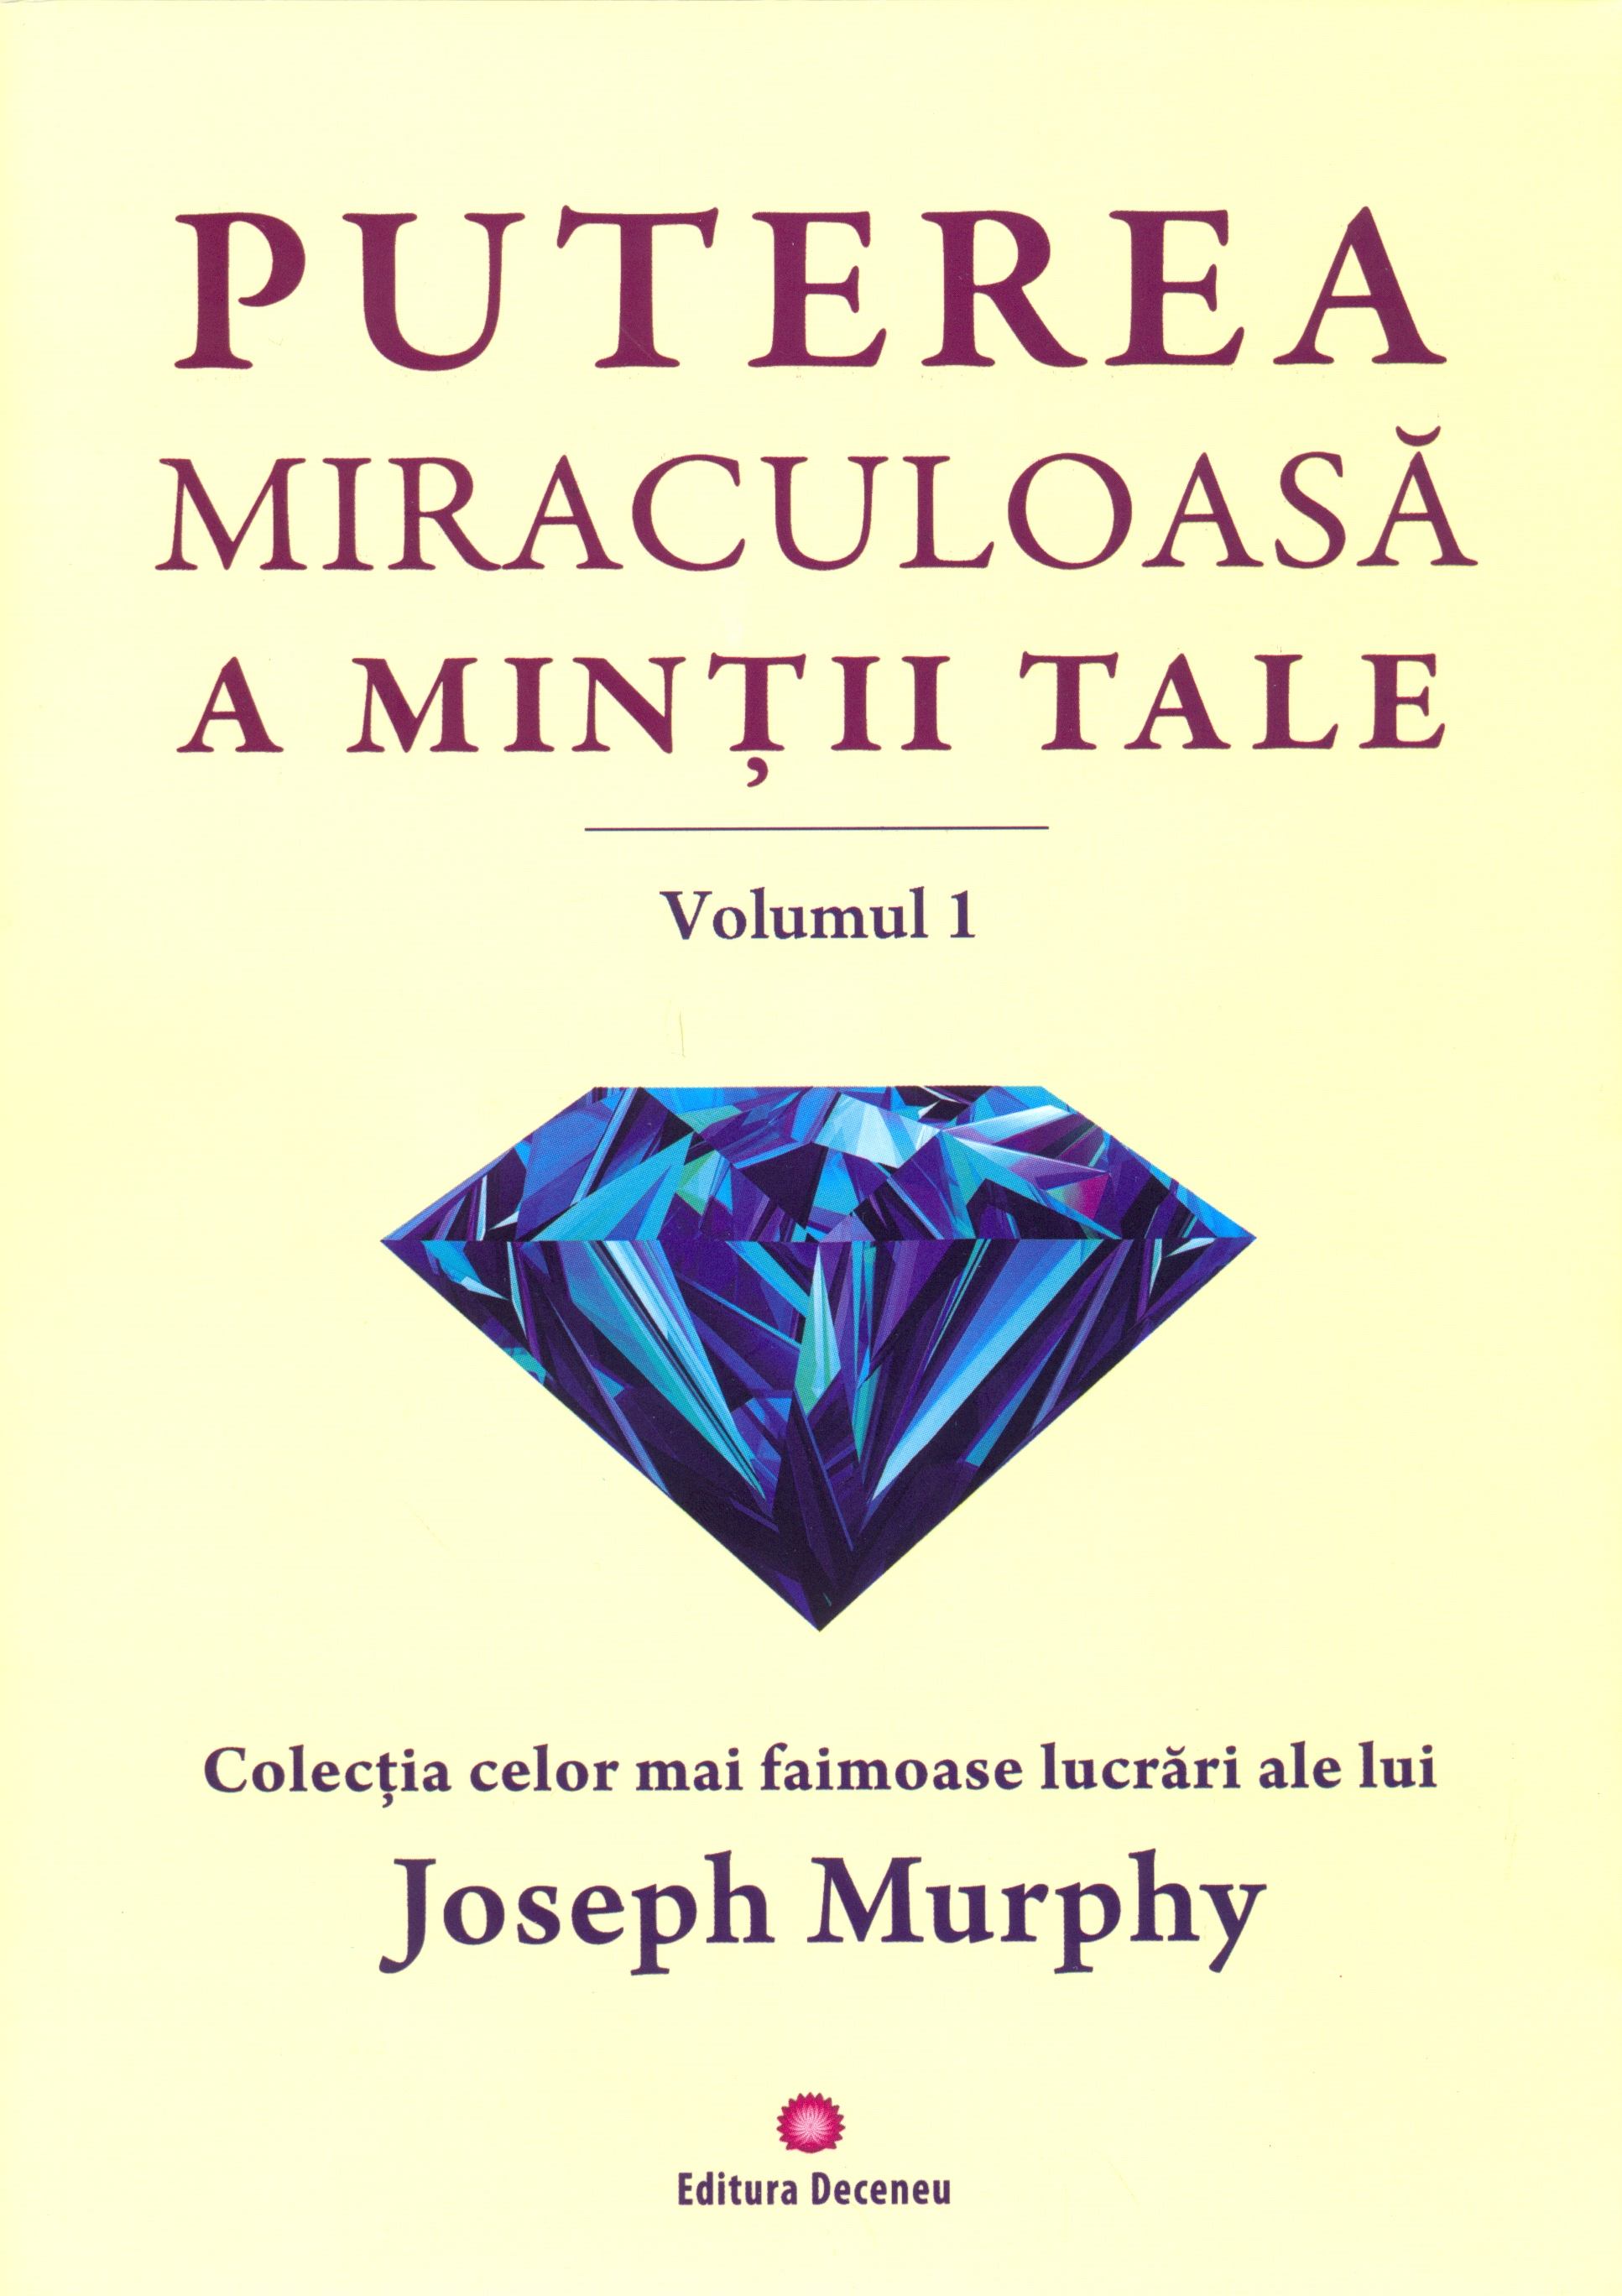 Puterea miraculoasa a mintii tale | Joseph Murphy carturesti 2022